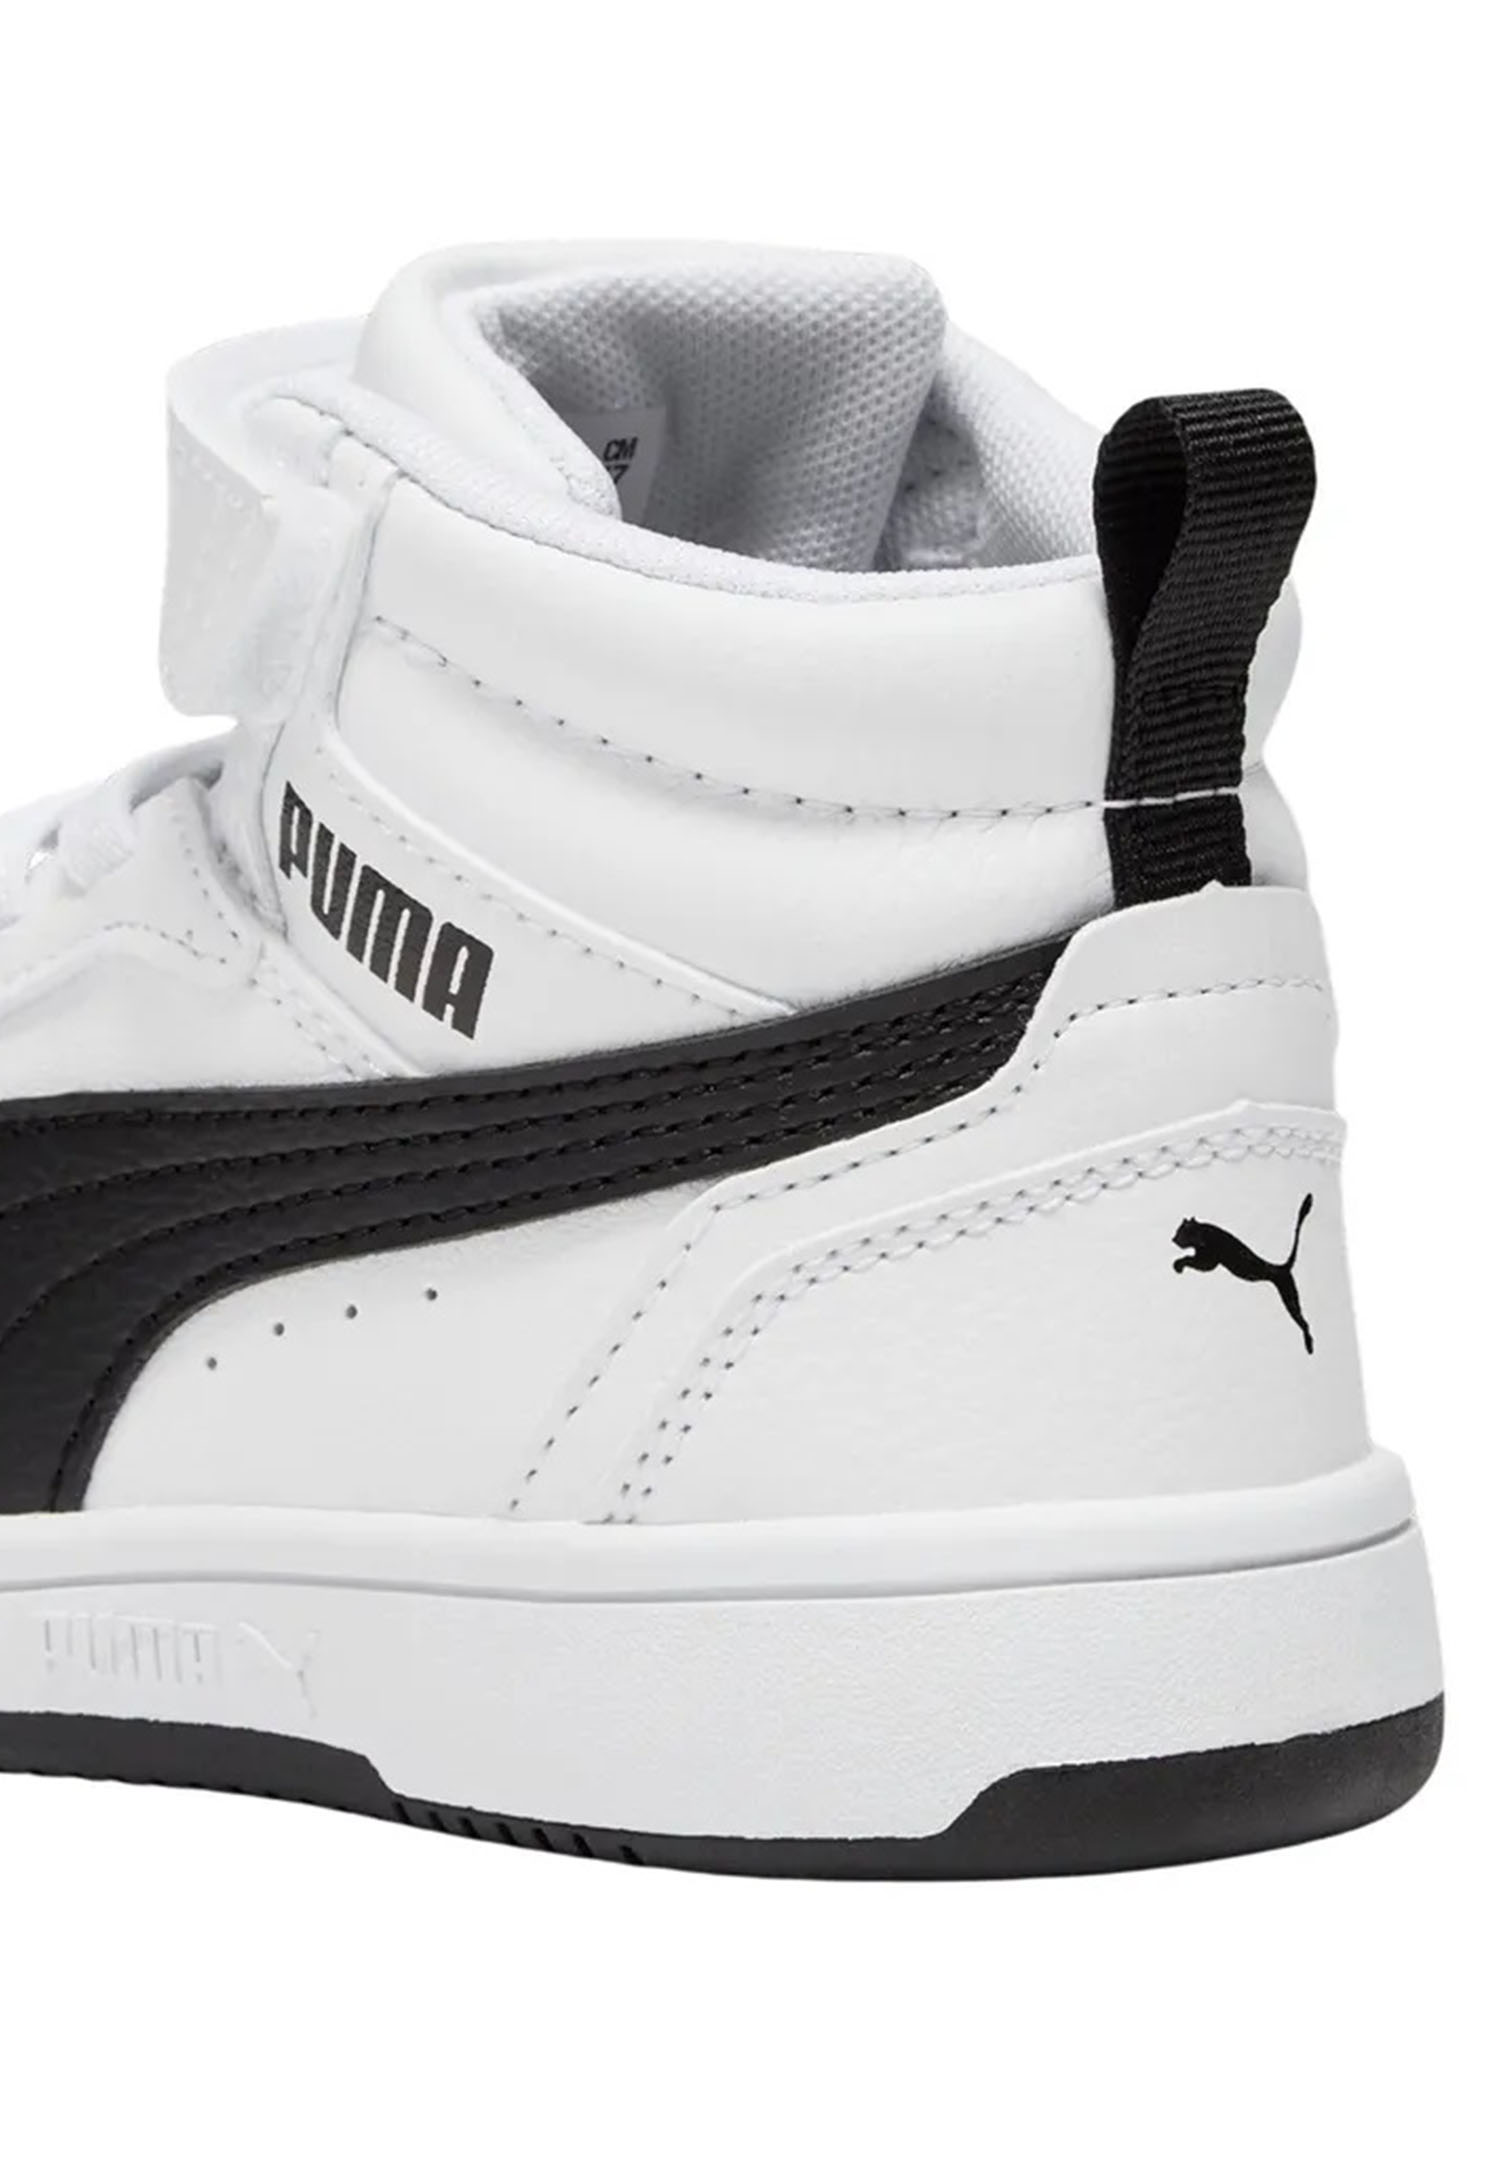 Puma Rebound V6 Mid AC+ PS Unisex Kinder Sneaker 393832 02 weiß/schwarz 